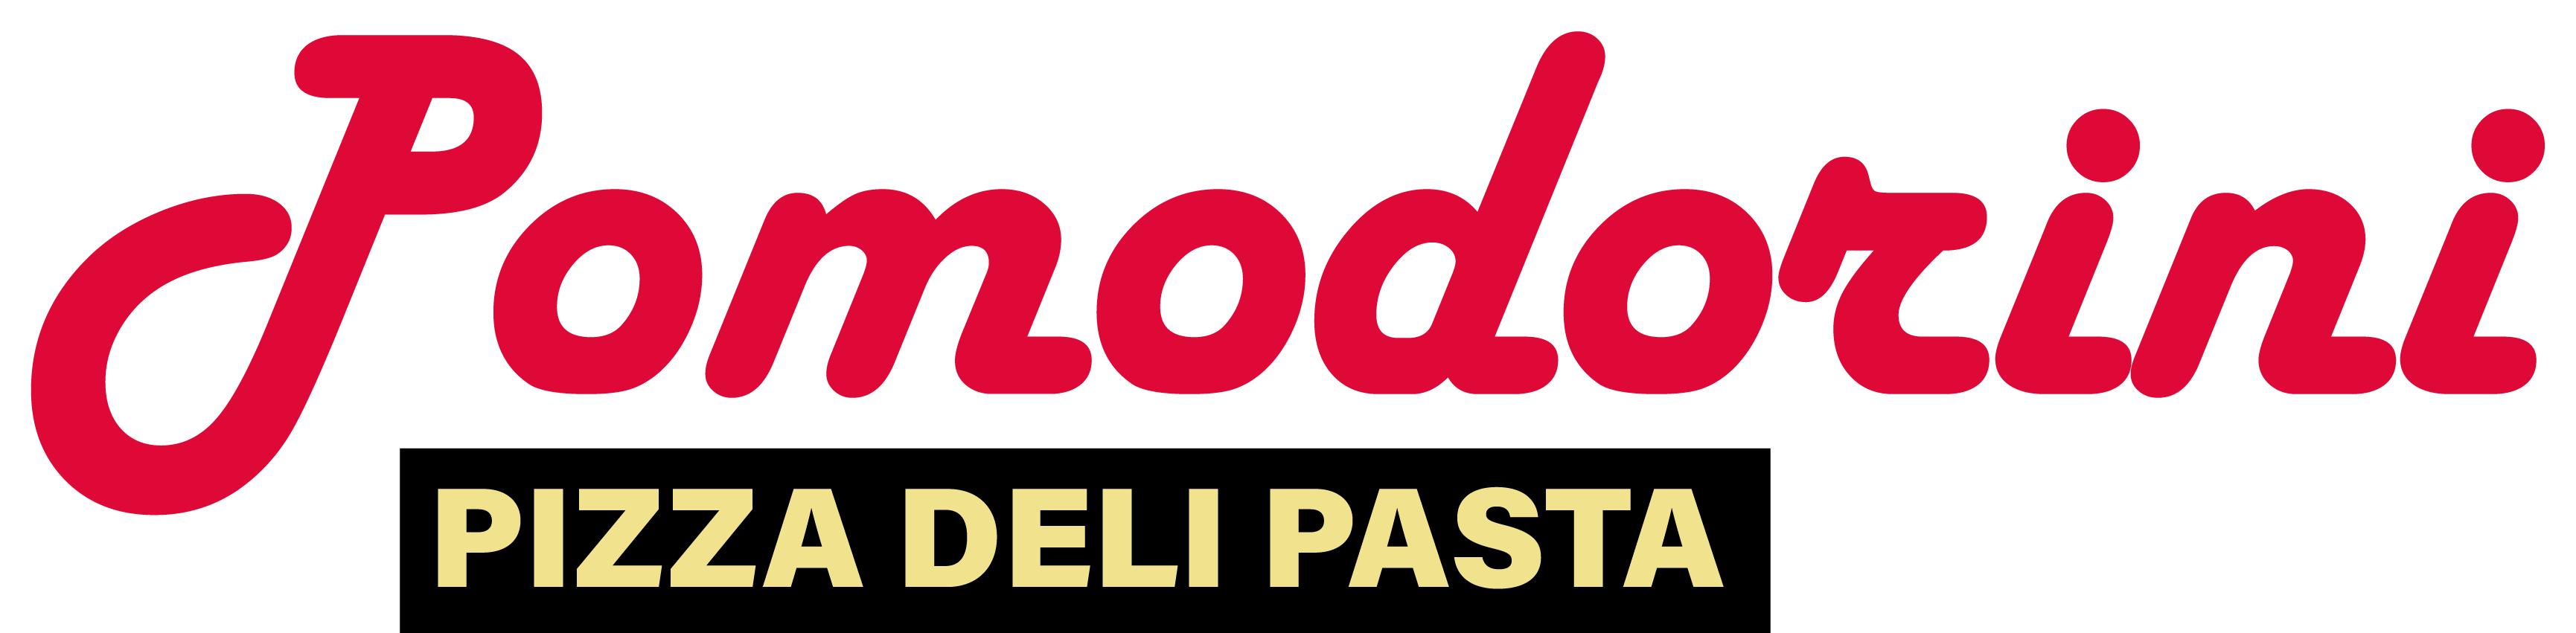 Pizzeria Pomodorini